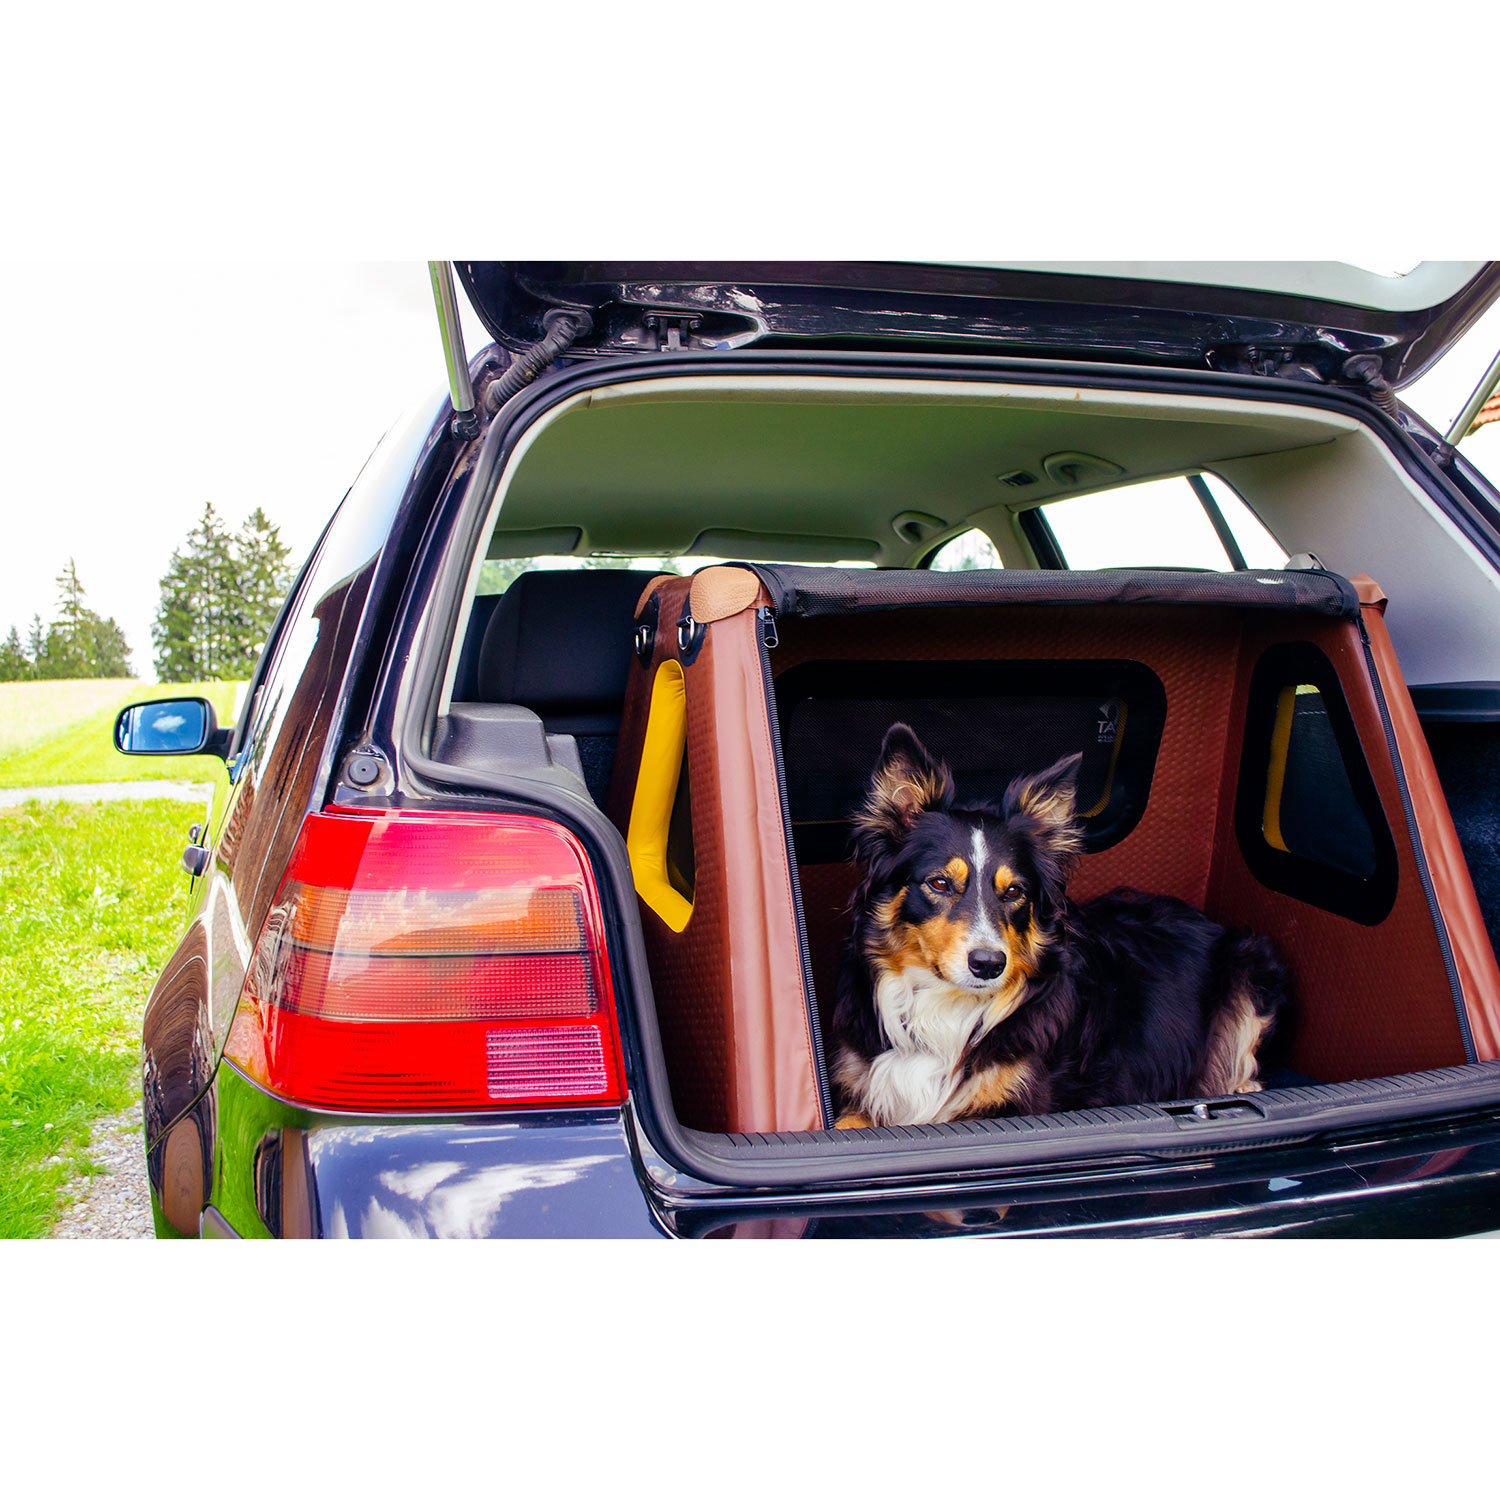 TAMI Spezial Hundebox mit Airbagfunktion für Fließheckautos - aufblasbar -  TAMI Dogbox General Distributor Europe